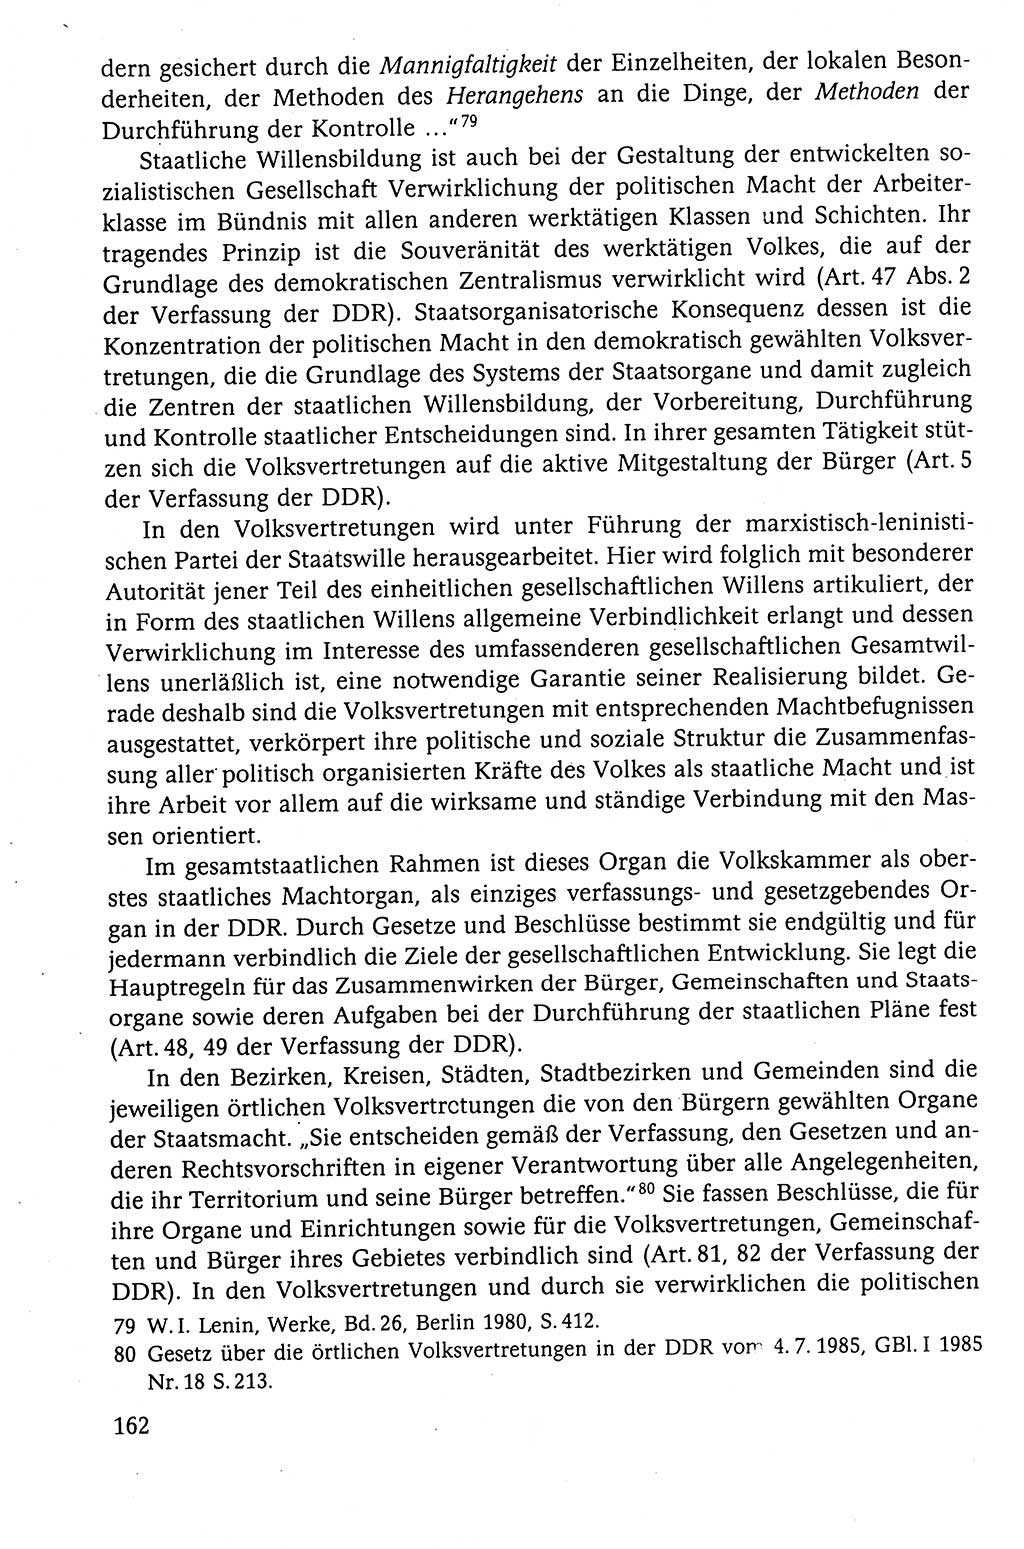 Der Staat im politischen System der DDR (Deutsche Demokratische Republik) 1986, Seite 162 (St. pol. Sys. DDR 1986, S. 162)